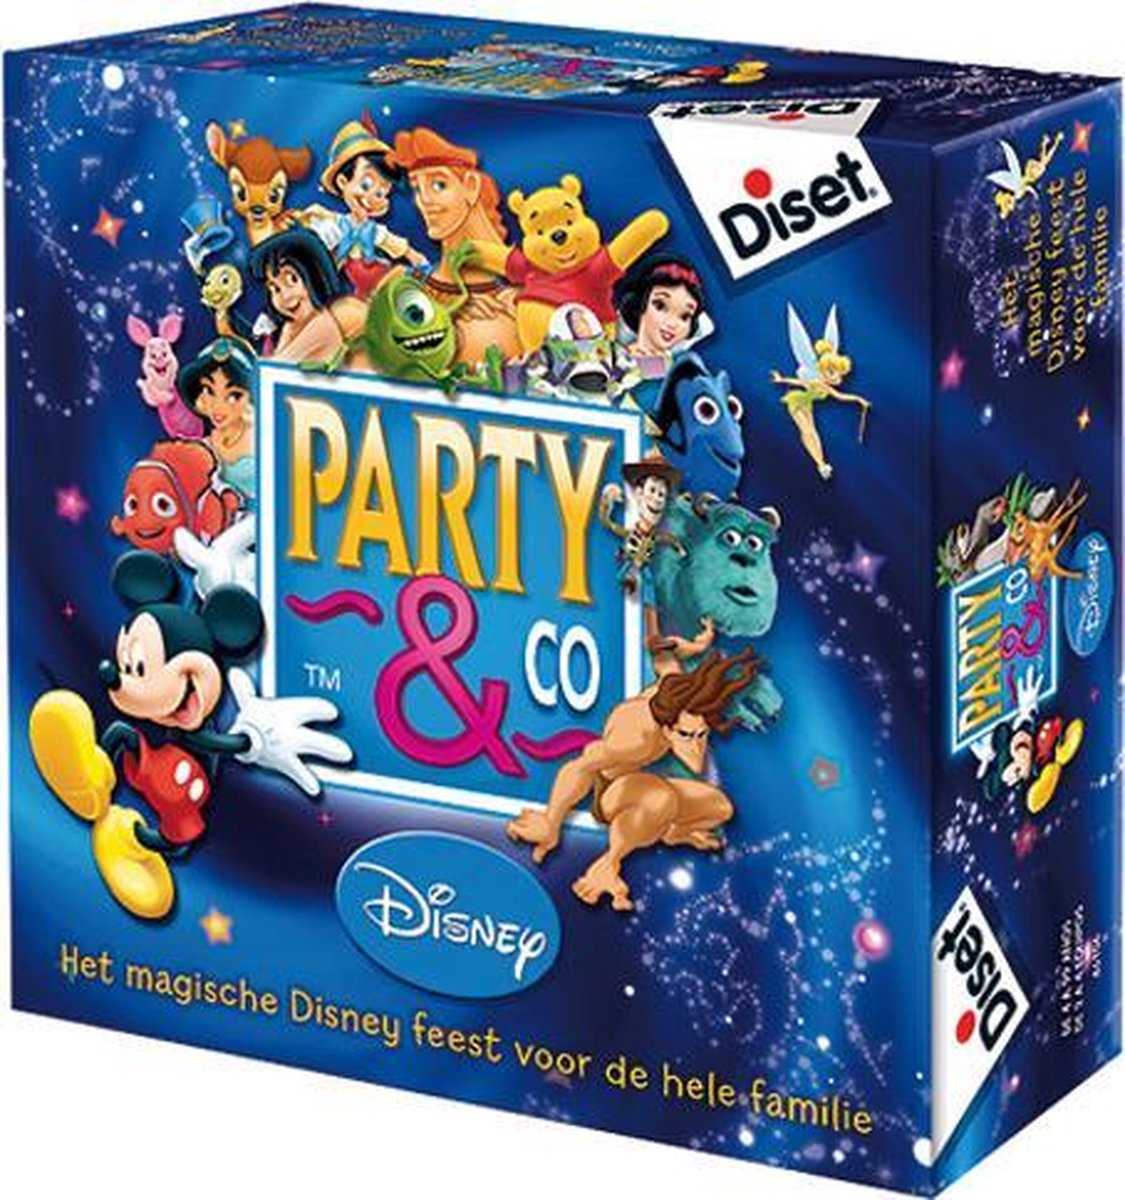 Party & Co Disney - Diset